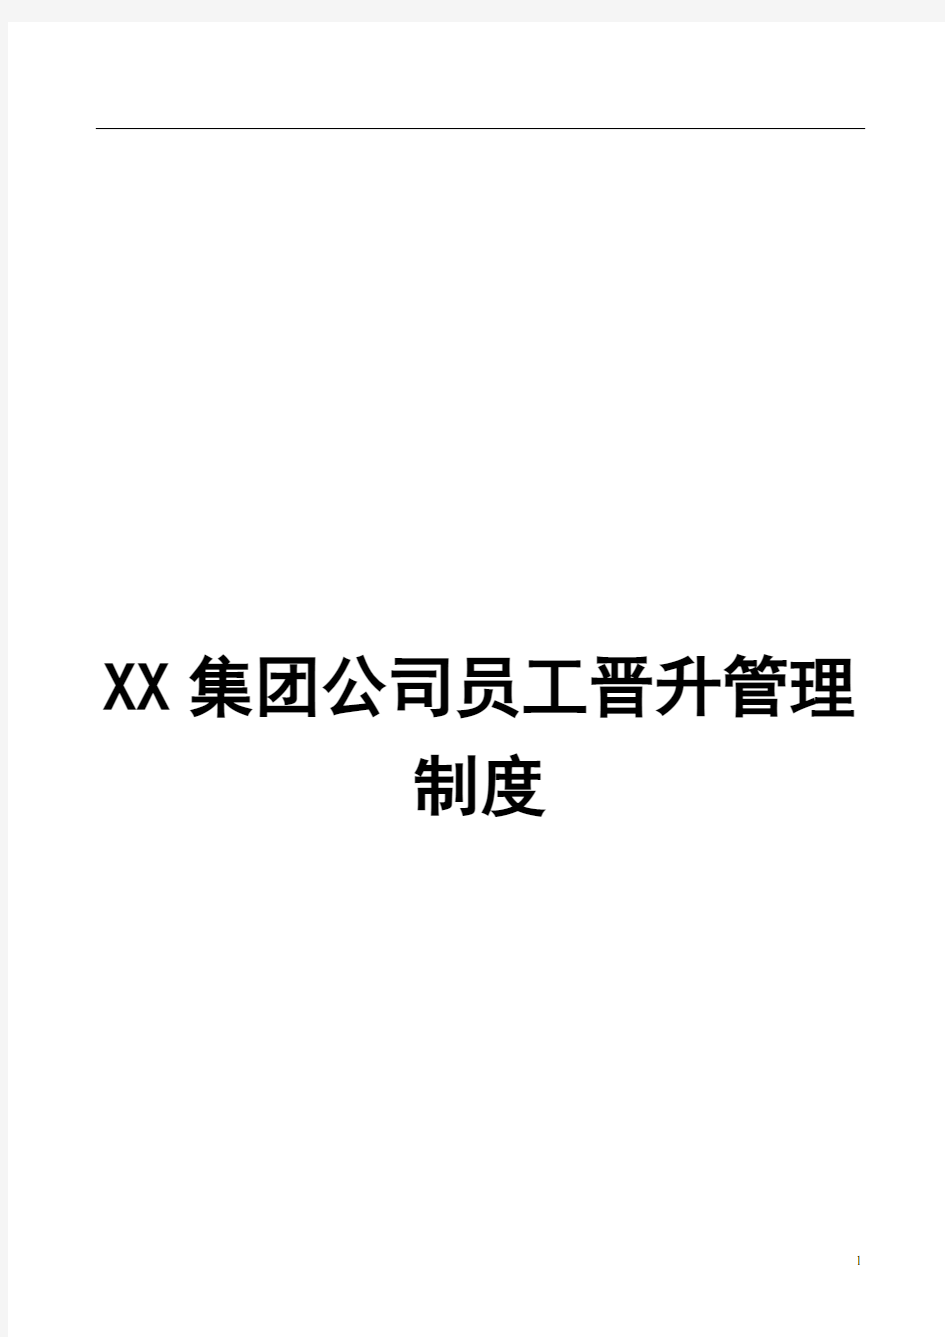 XX集团公司员工晋升管理制度【强烈推荐,实战精华版】